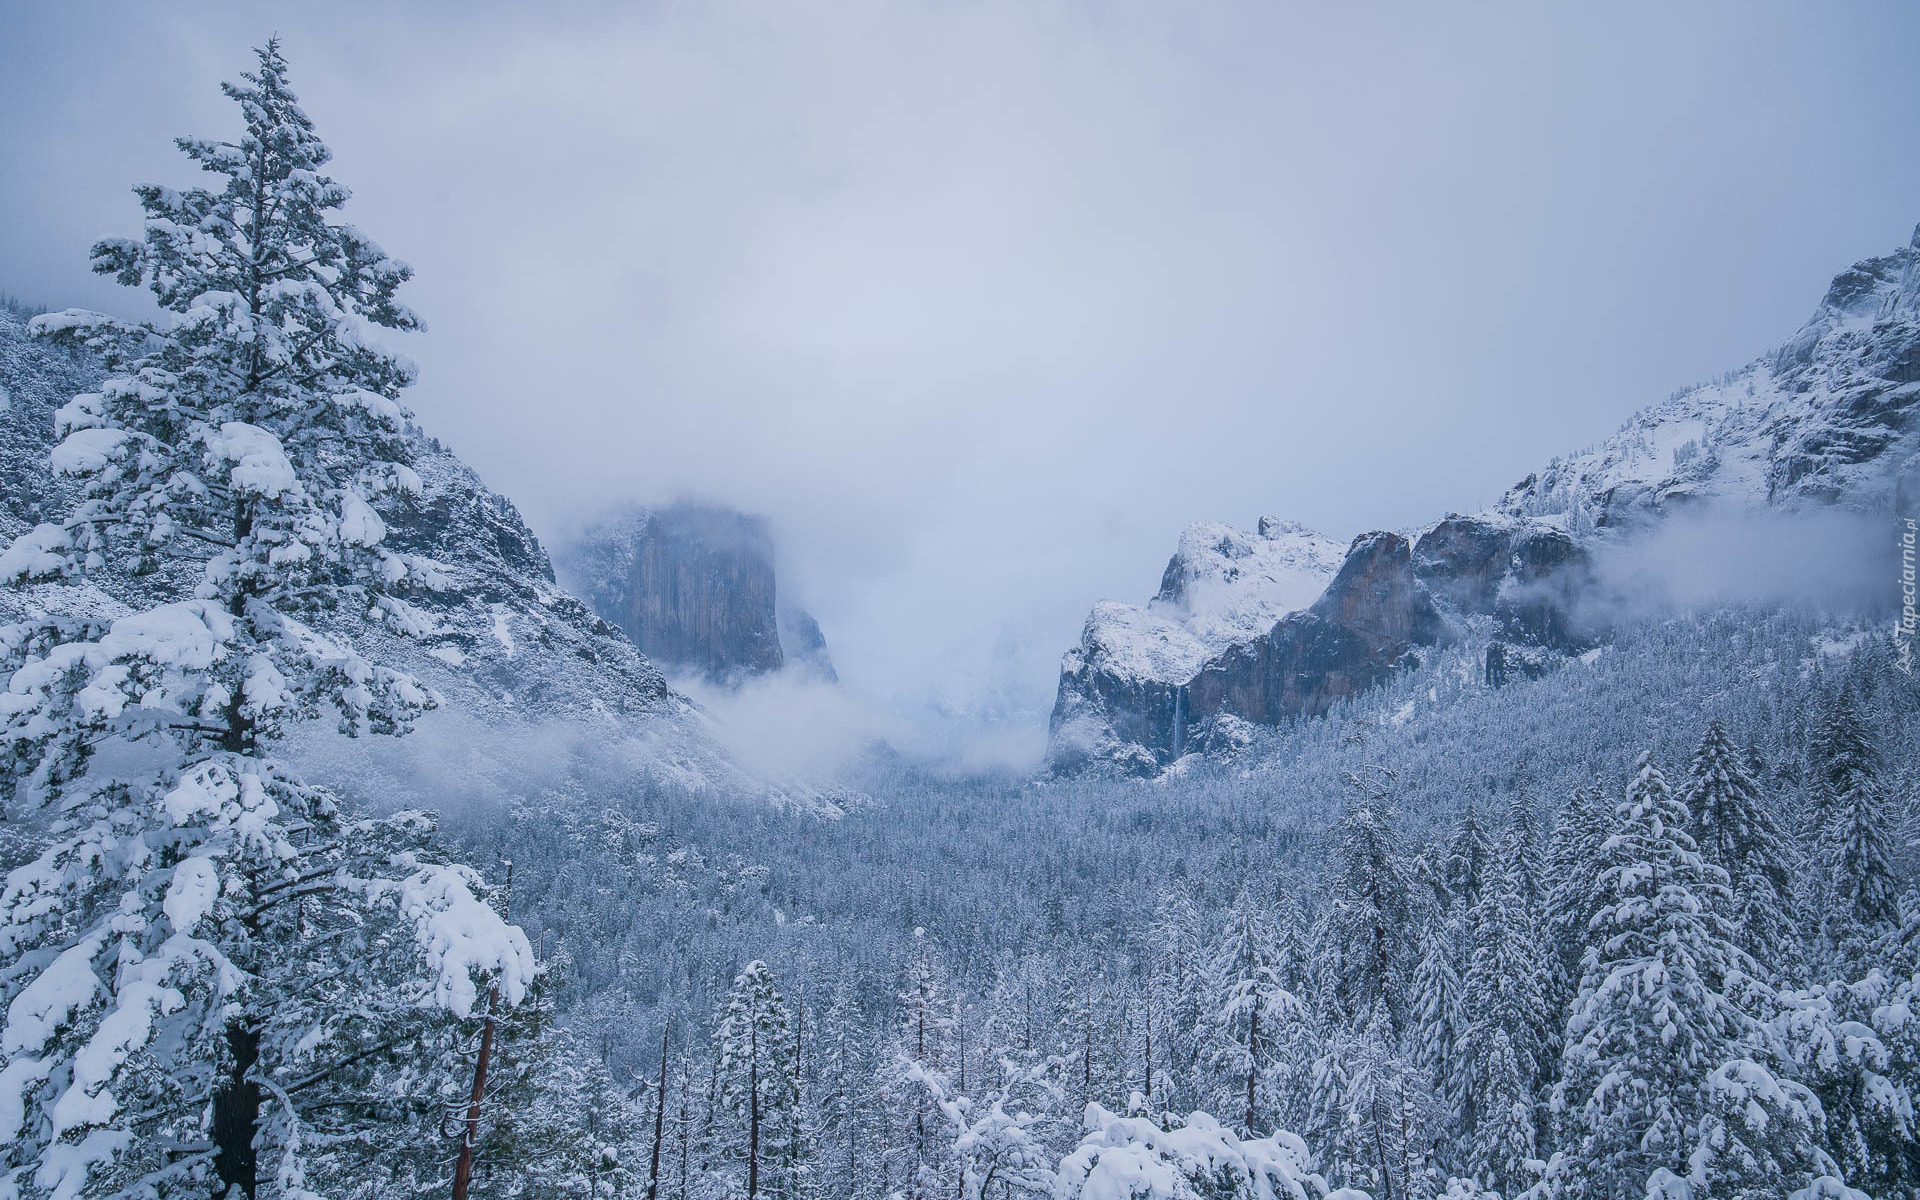 Park Narodowy Yosemite, Góry, Świerki, Drzewa, Dolina Yosemite Valley, Mgła, Zima, Stan Kalifornia, Stany Zjednoczone